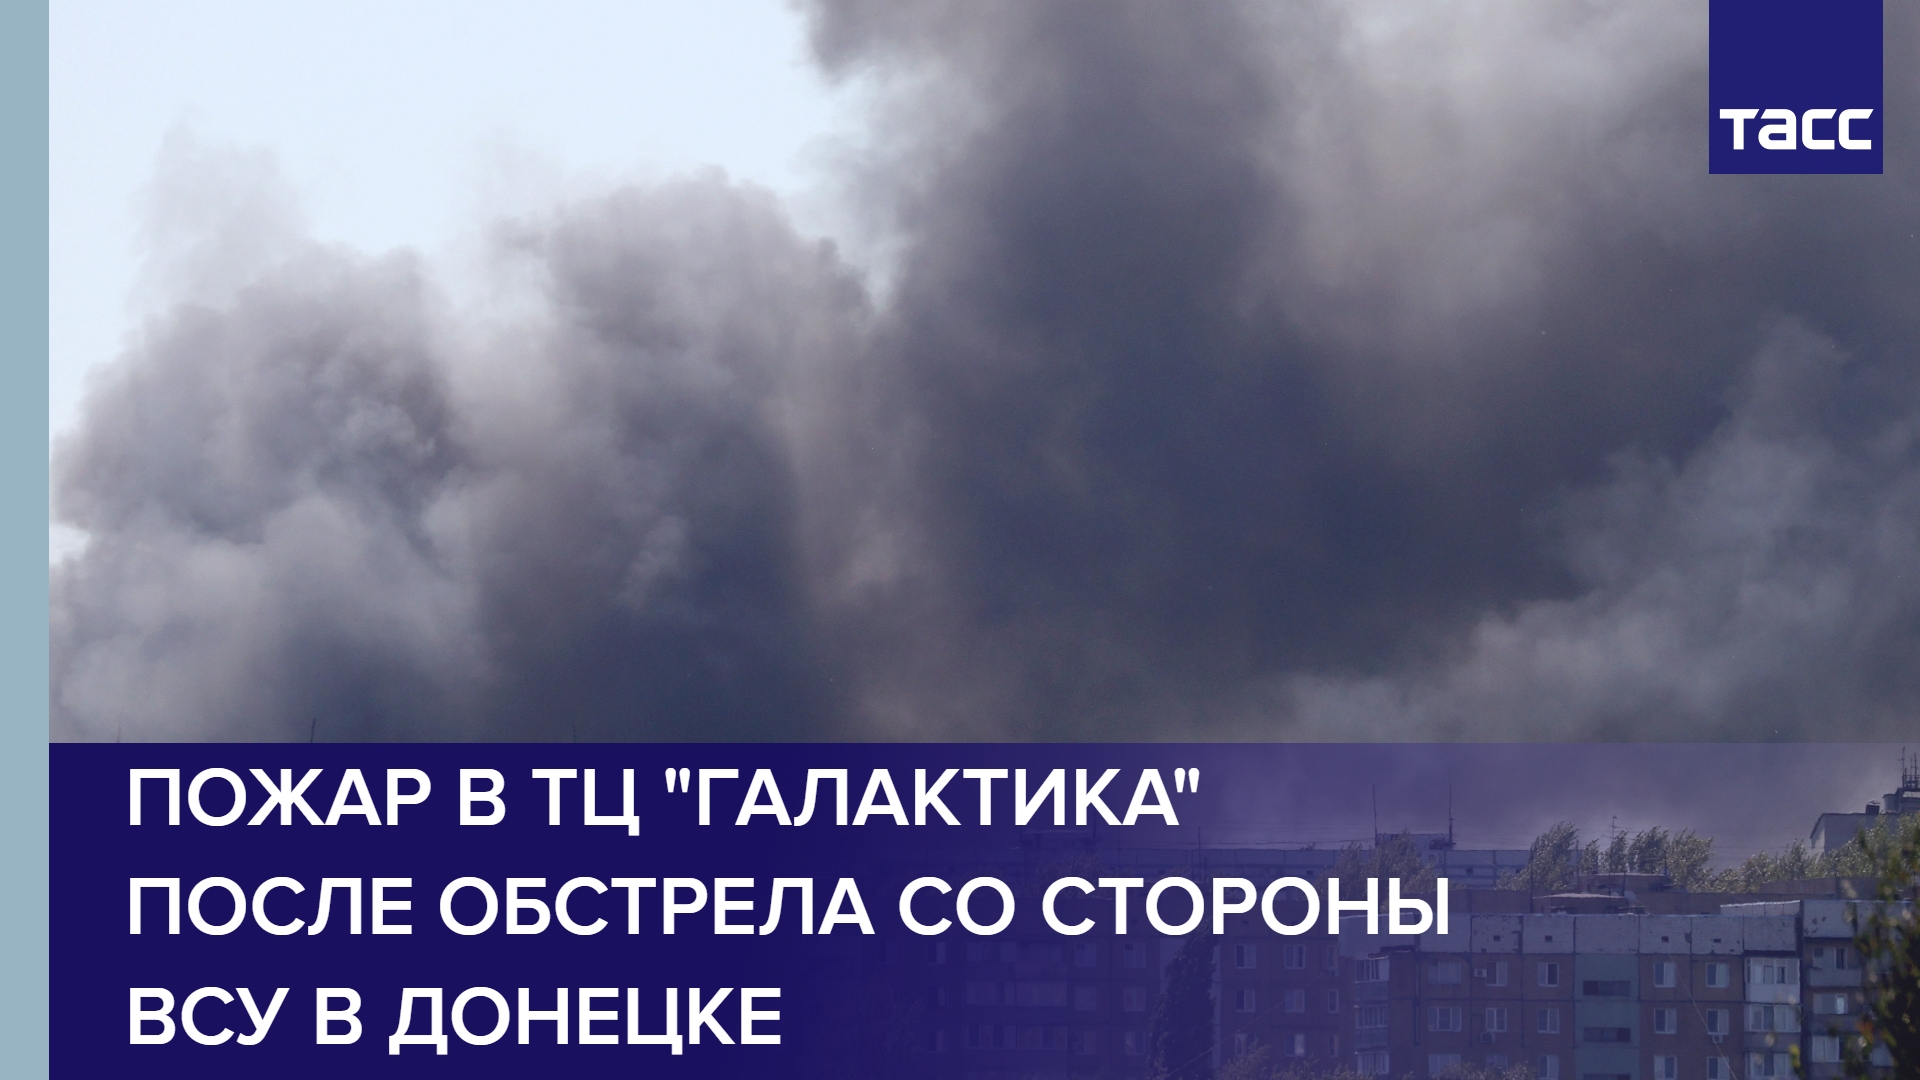 Пожар в ТЦ "Галактика" после обстрела со стороны ВСУ в Донецке #shorts